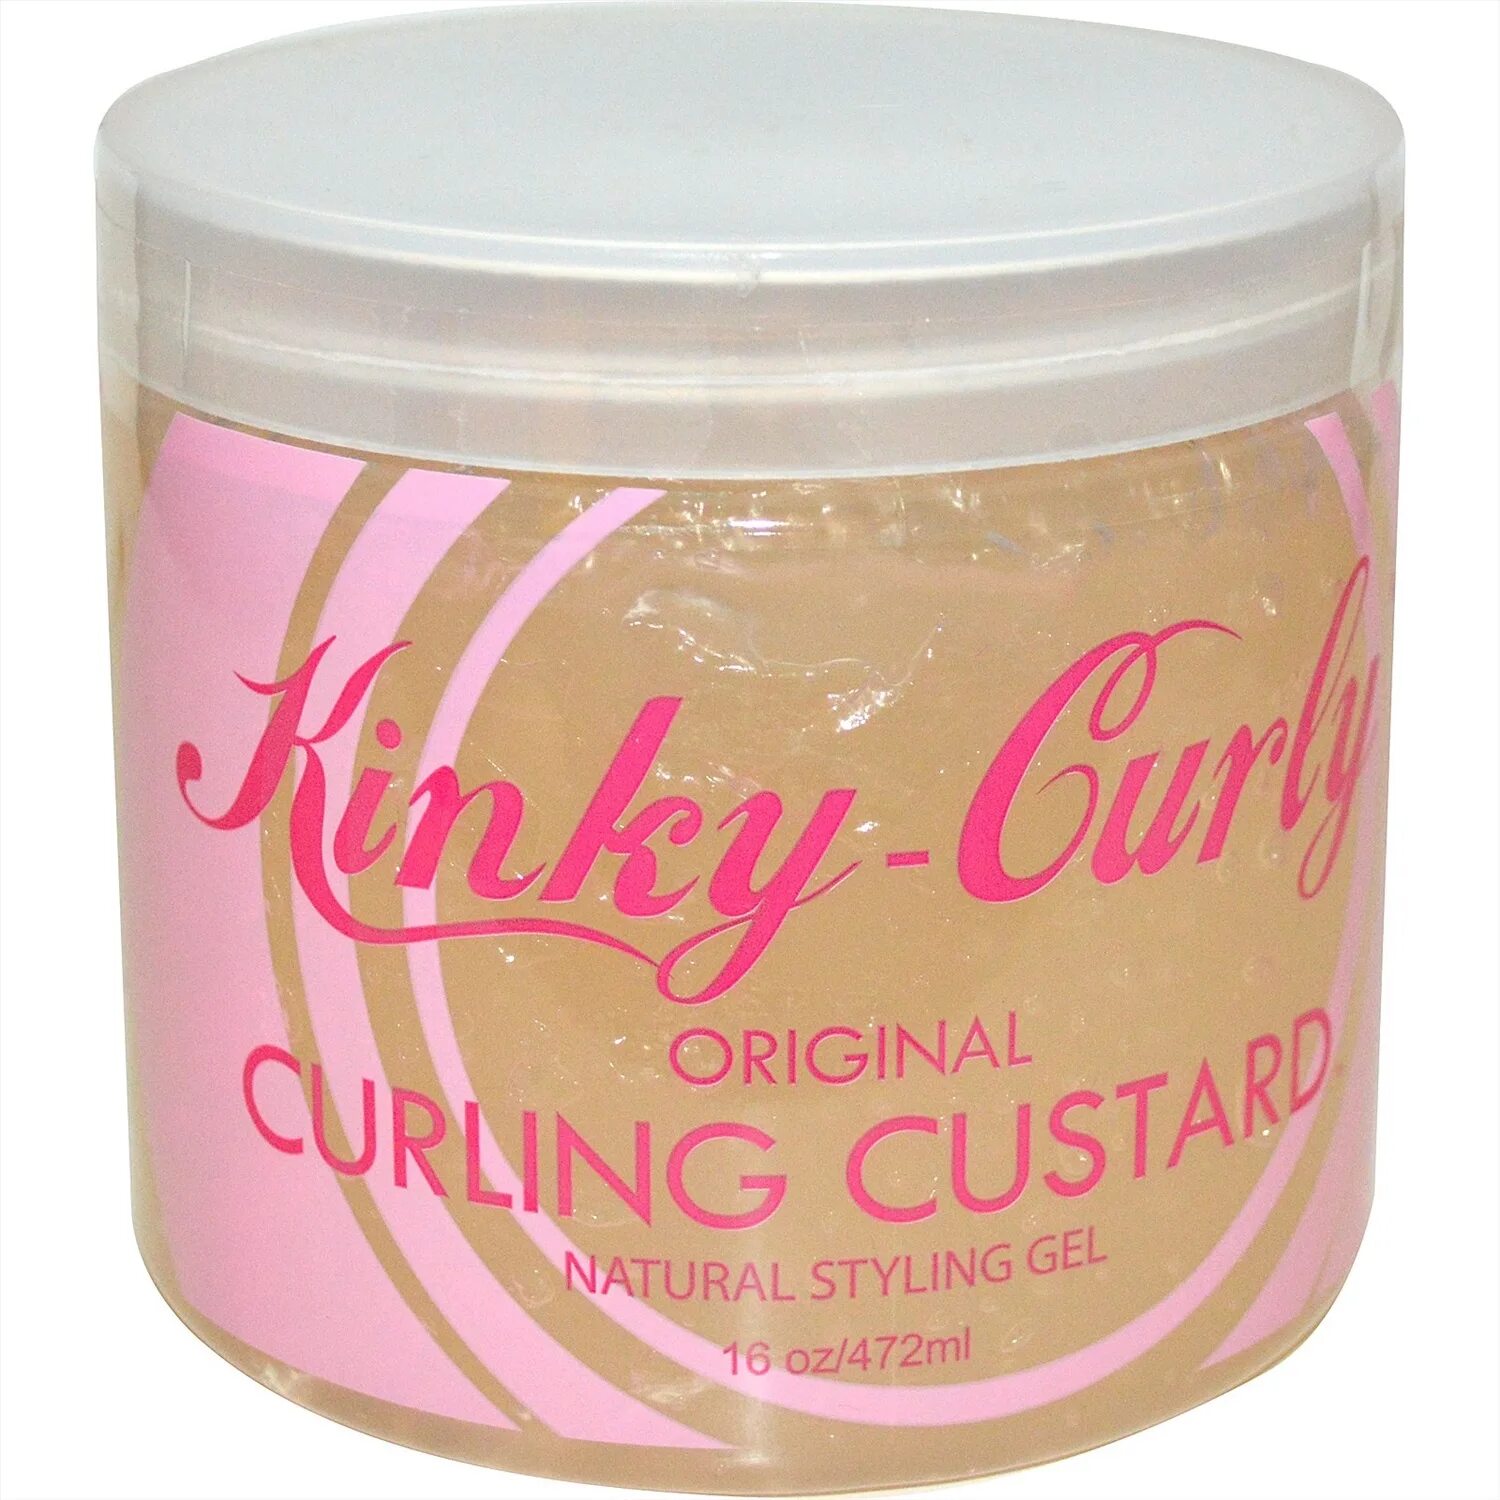 Гель для вьющихся волос. Kinky-curly Original Curling Custard natural styling Gel. Кастард kinky curly. Kinky curly гель. Гель для волос Кинки Керли.